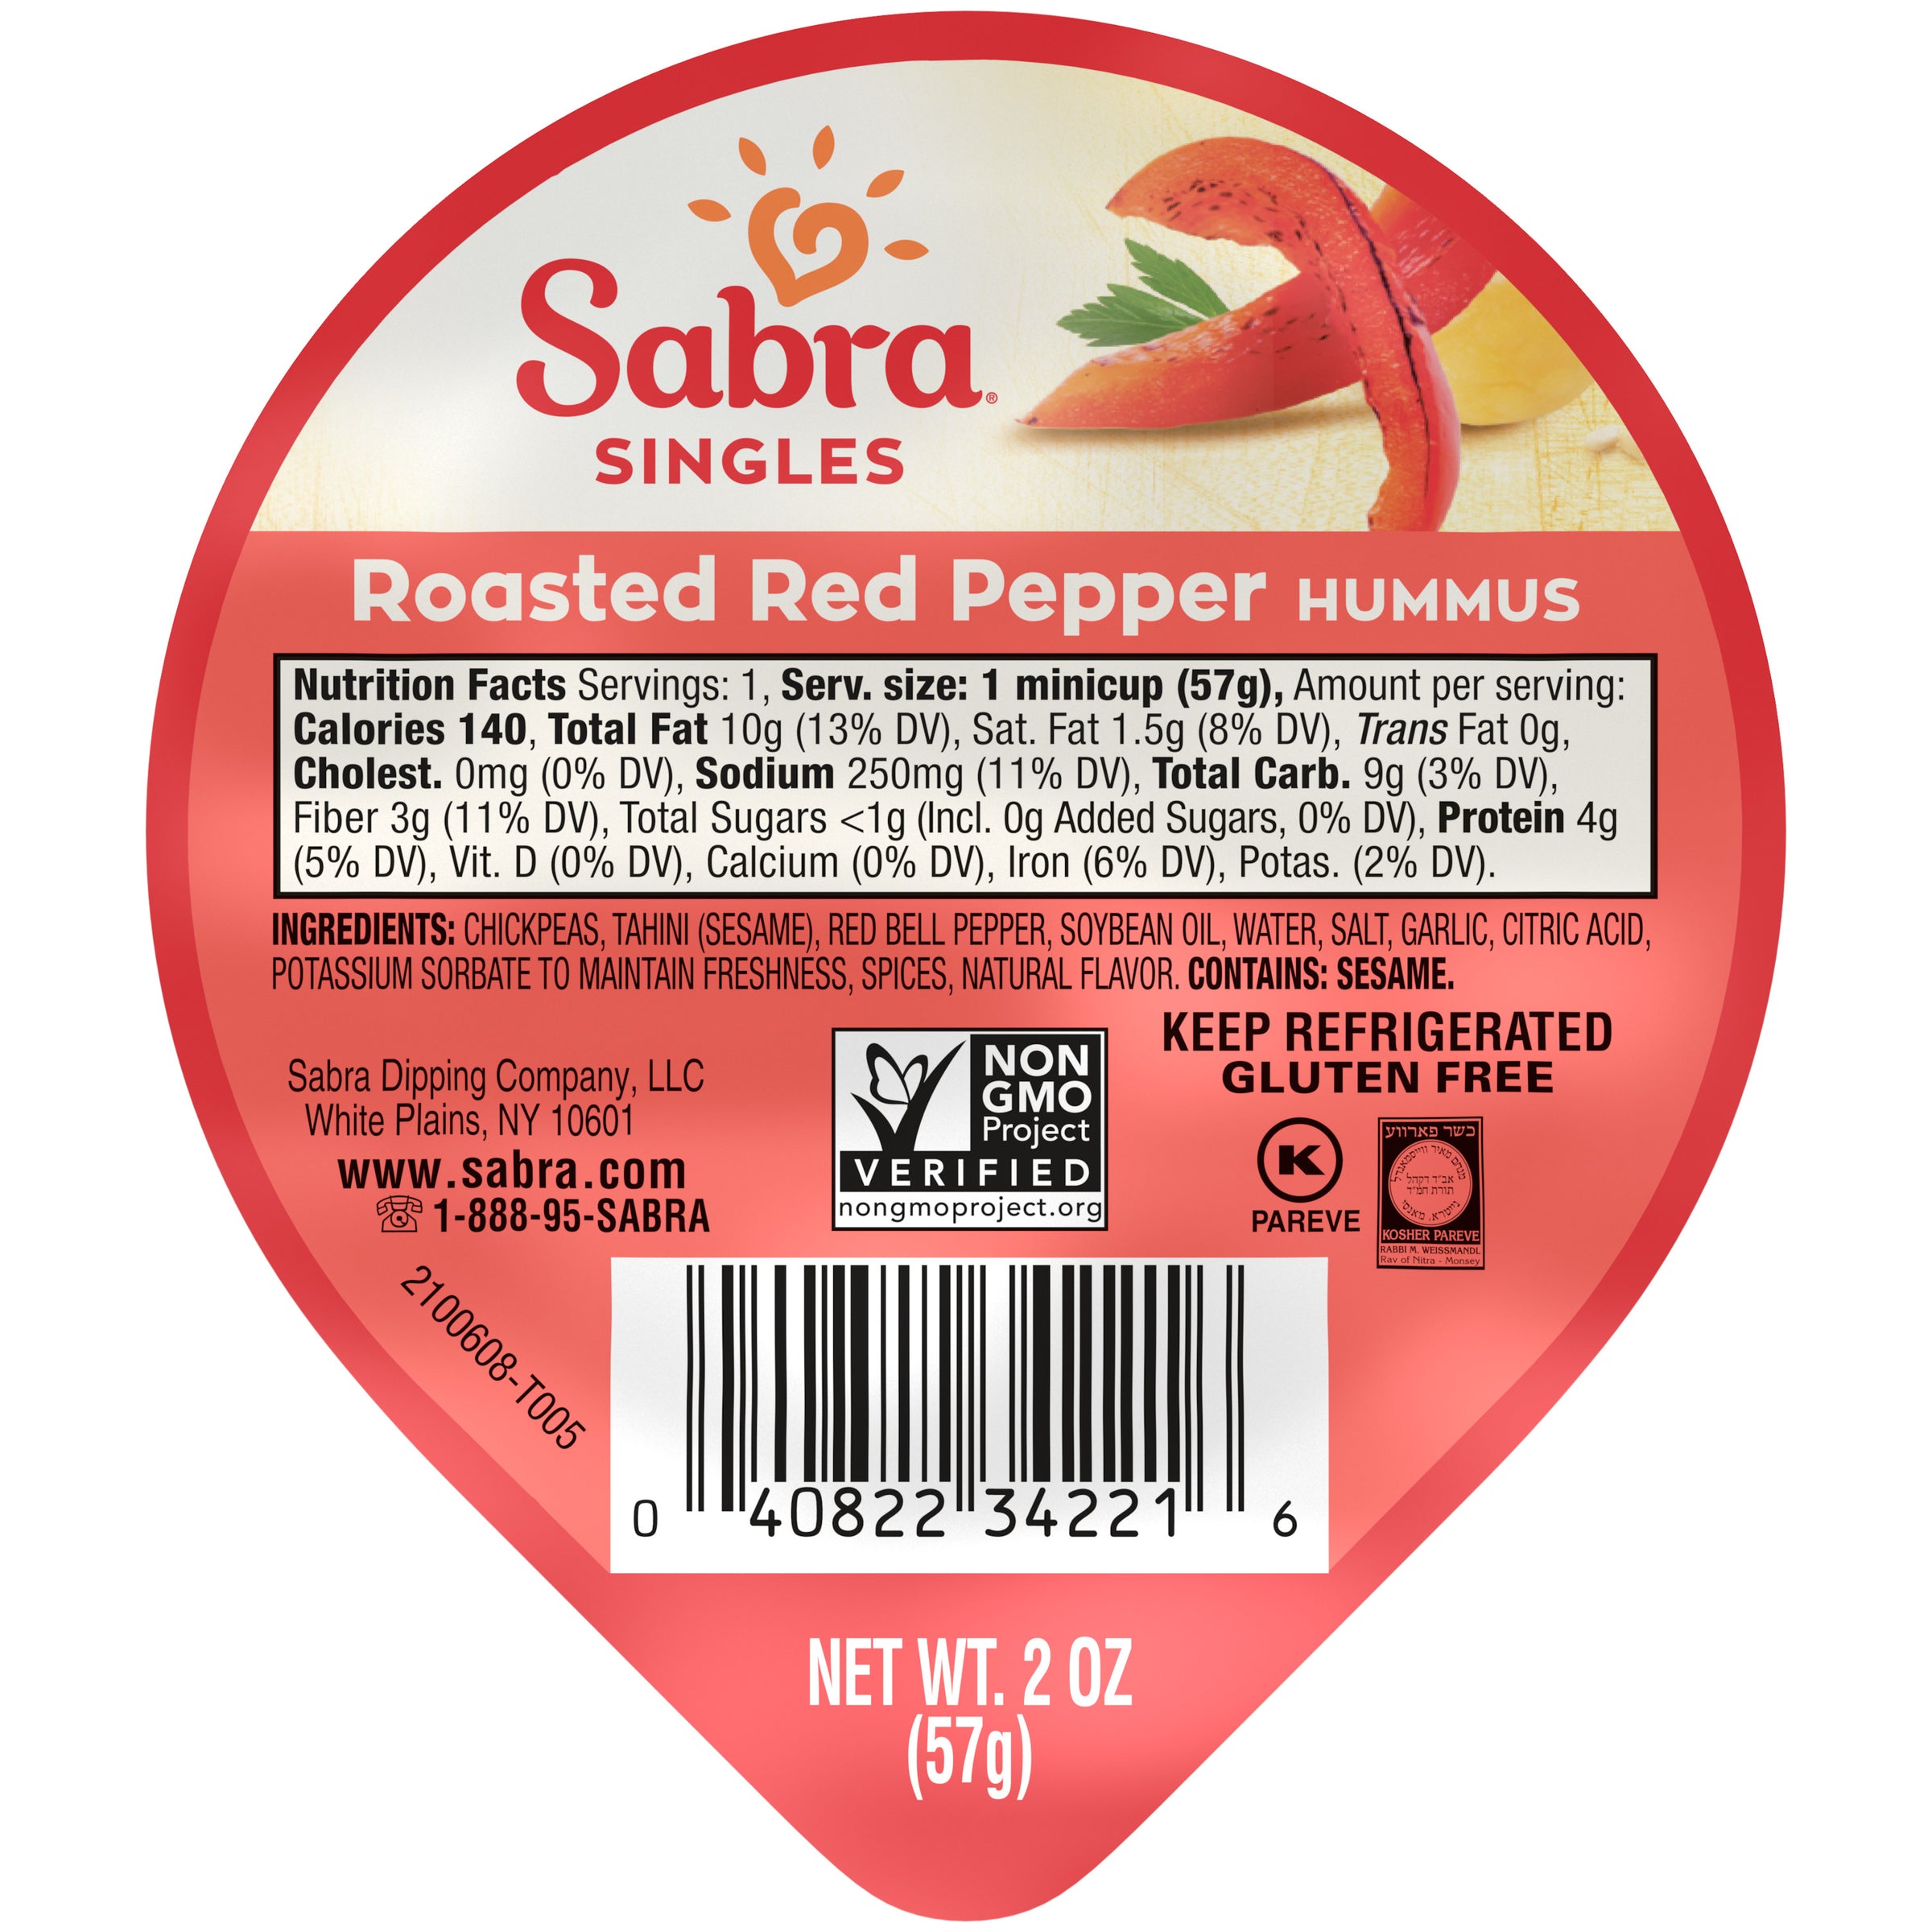 Sabra Roasted Red Pepper Hummus Singles